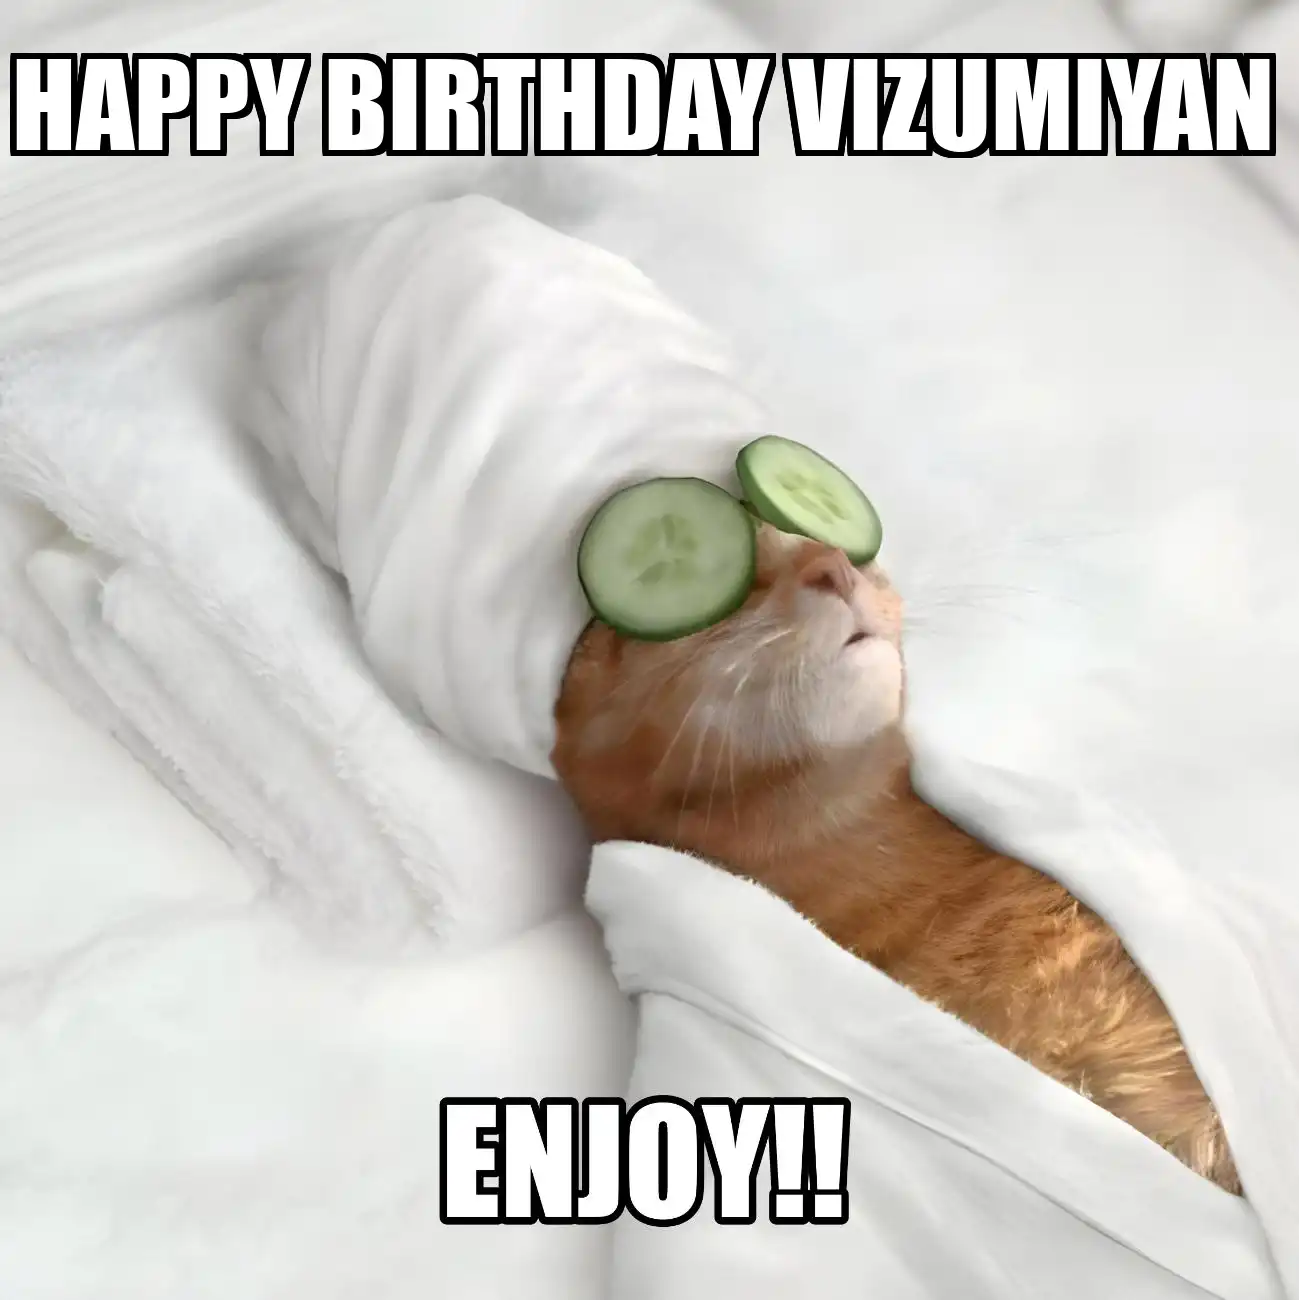 Happy Birthday Vizumiyan Enjoy Cat Meme